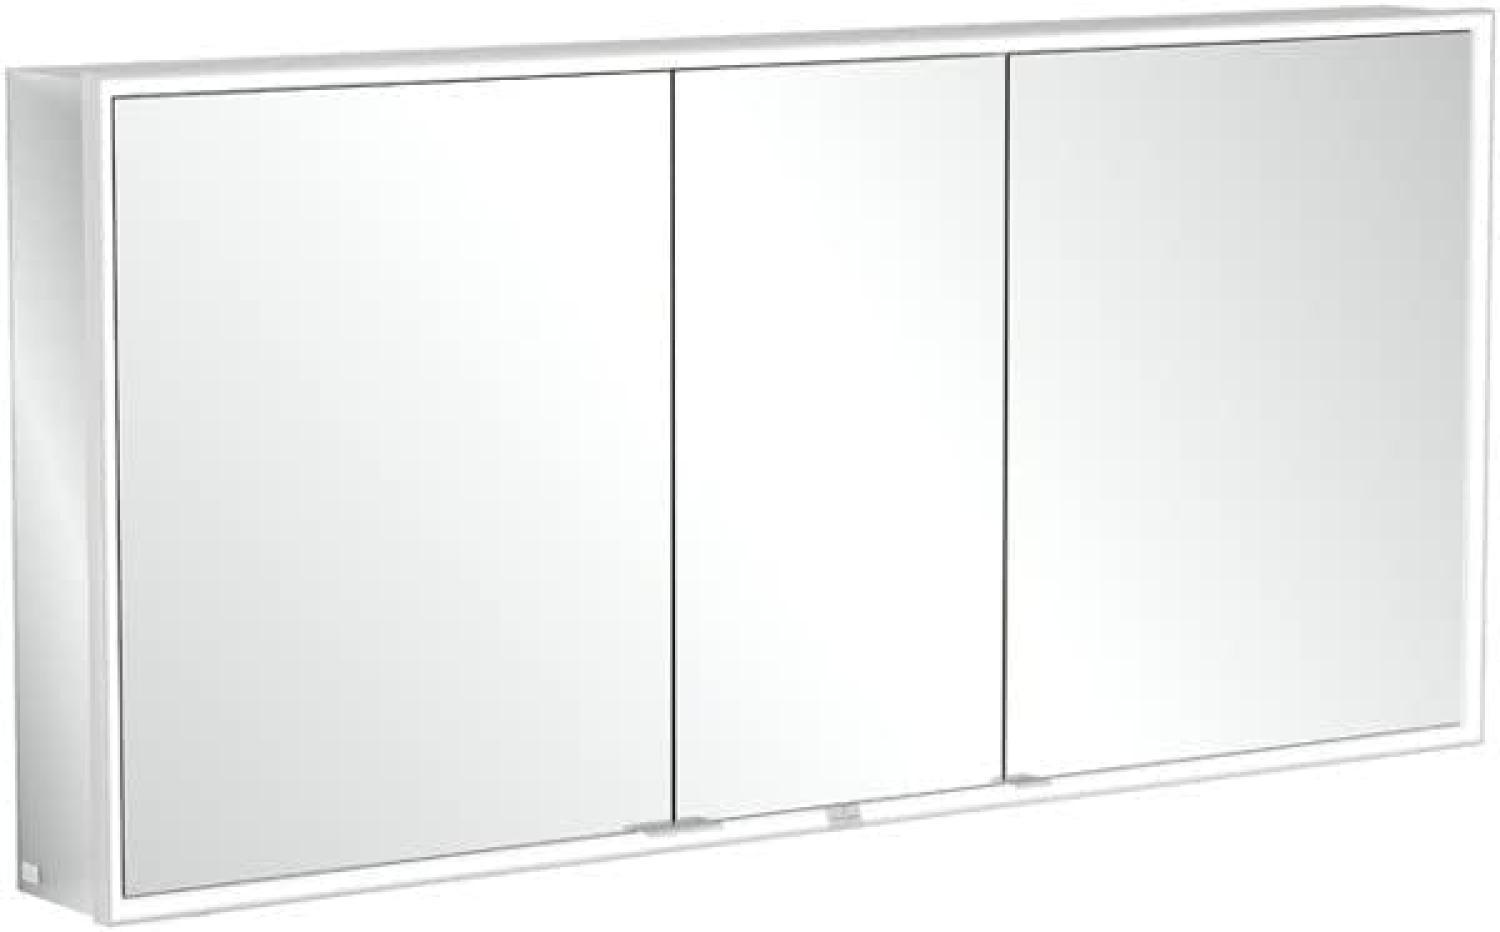 Villeroy & Boch My View Now, Spiegelschrank für Aufputz mit Beleuchtung, 1600x750x168 mm, mit Ein-/Ausschalter, Smart Home fähig, 3 Türe , A45716 - A4571600 Bild 1